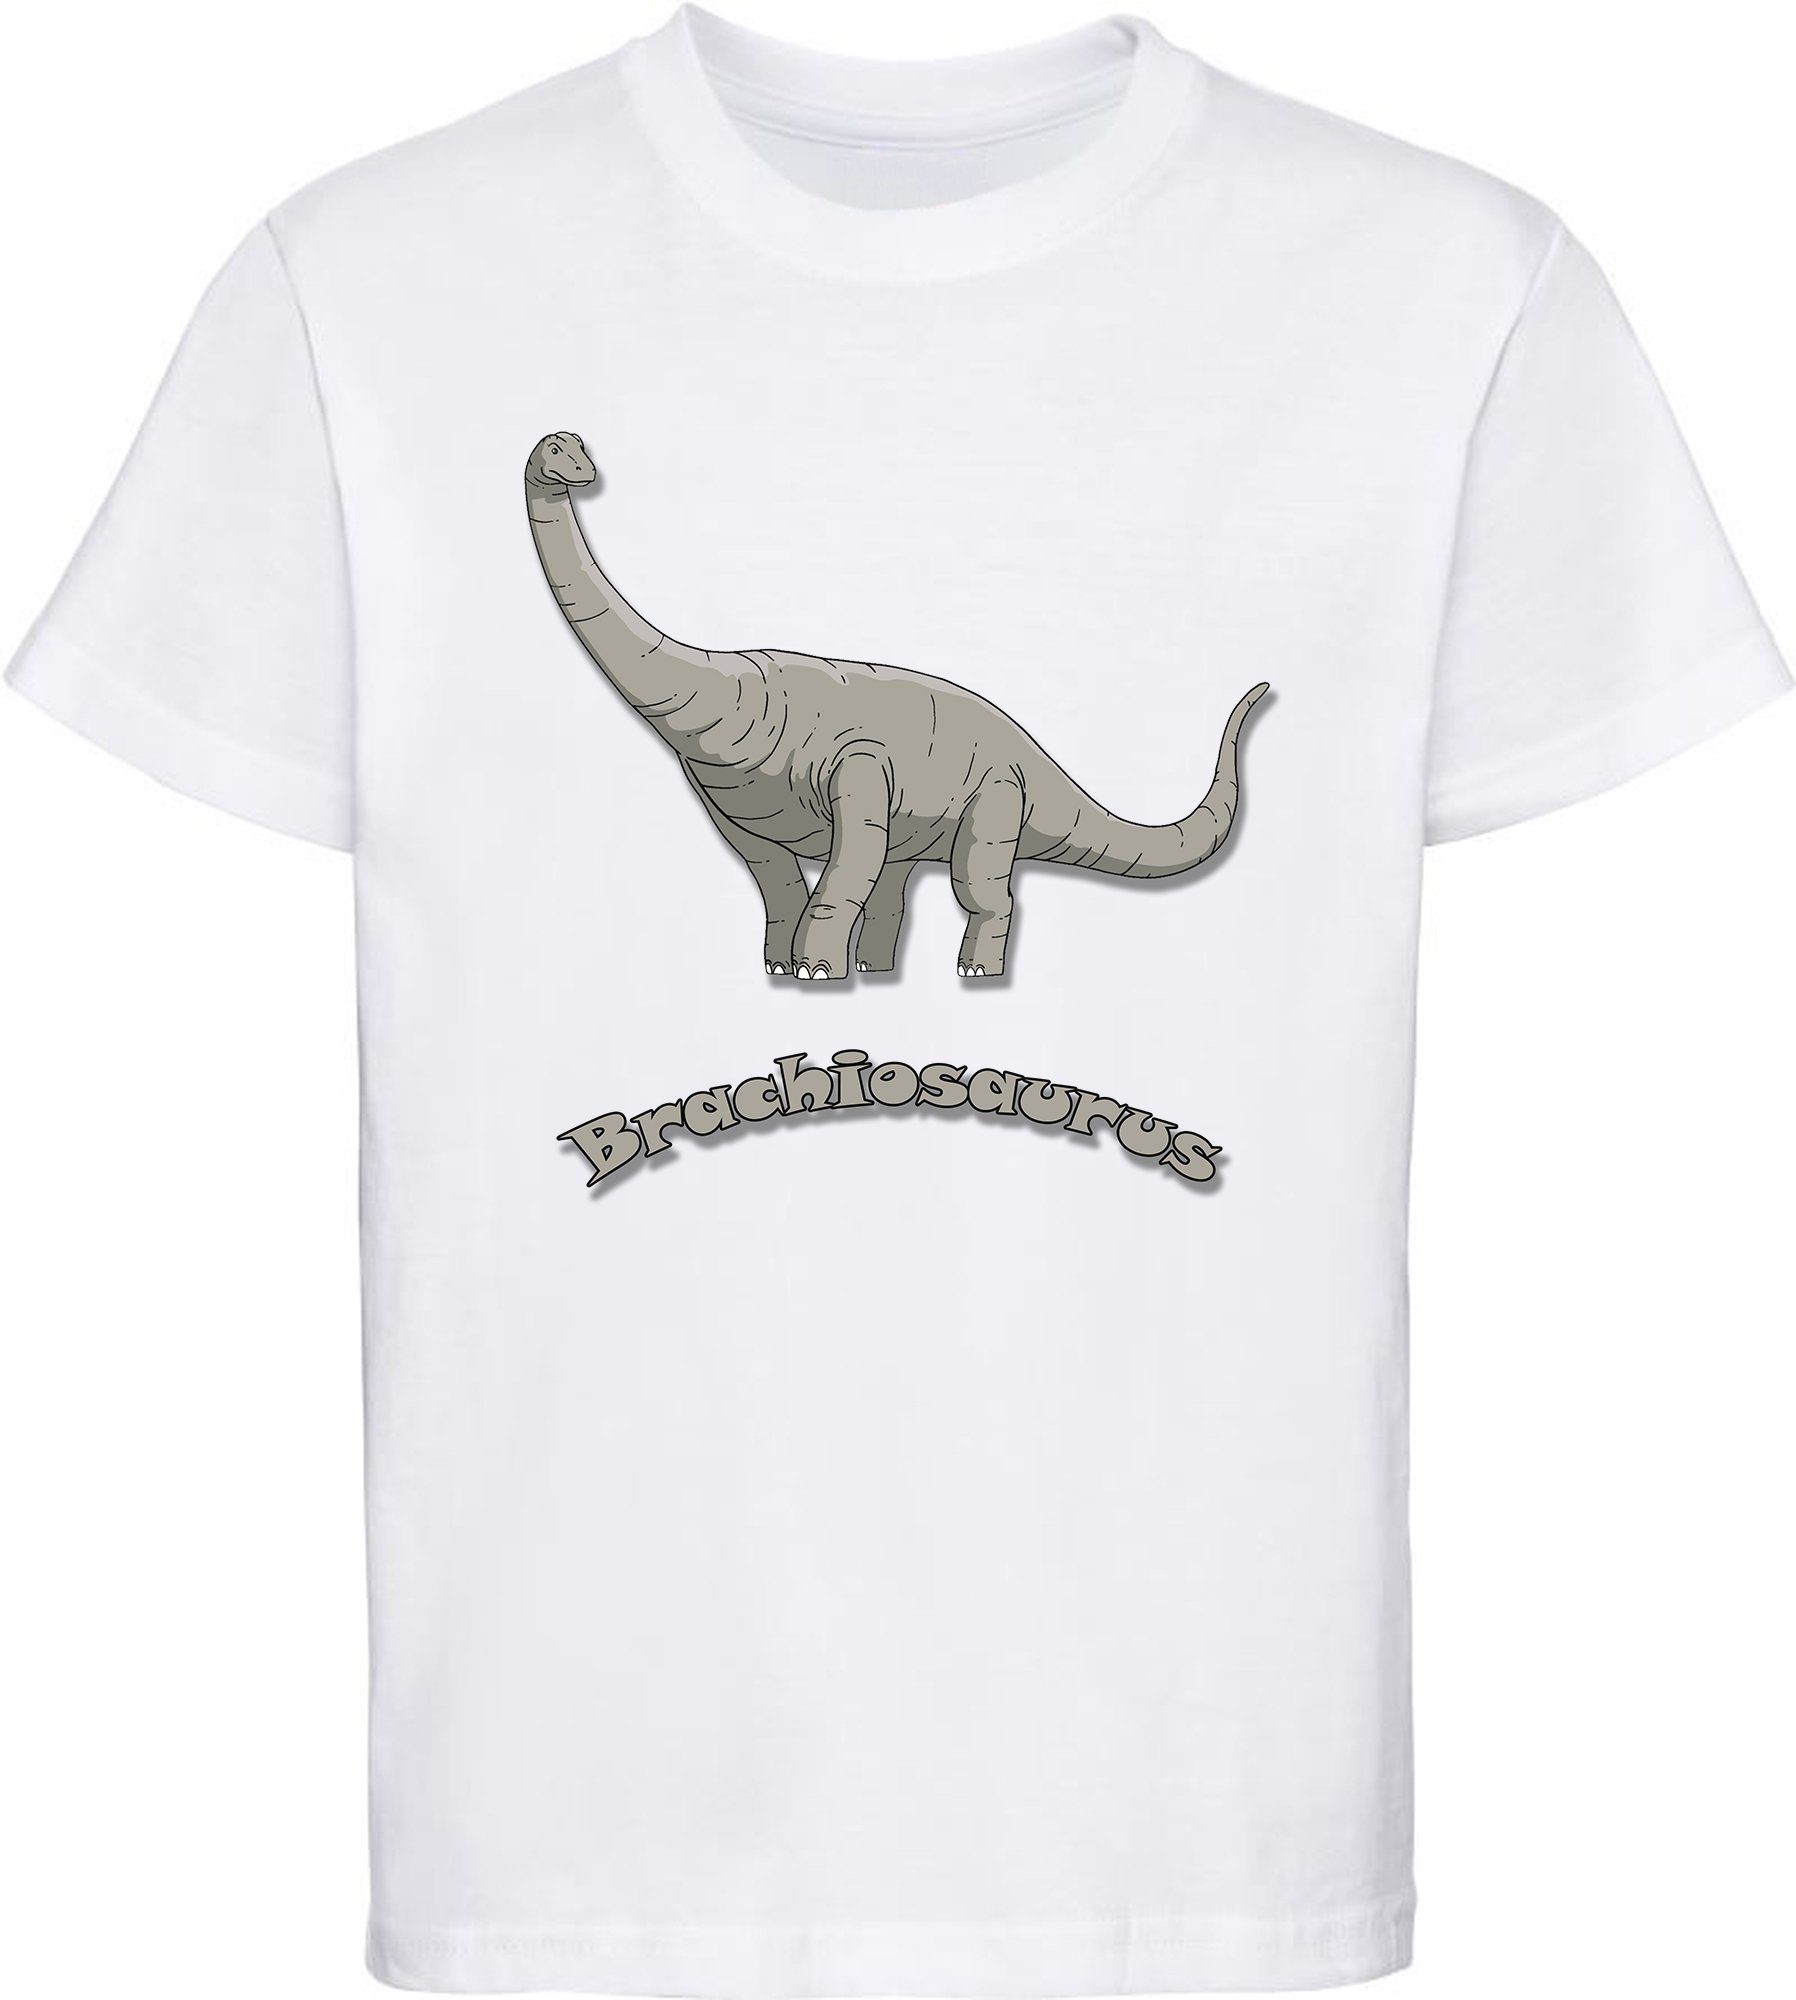 MyDesign24 Print-Shirt bedrucktes Kinder T-Shirt mit Brachiosaurus Baumwollshirt mit Dino, schwarz, weiß, rot, blau, i66